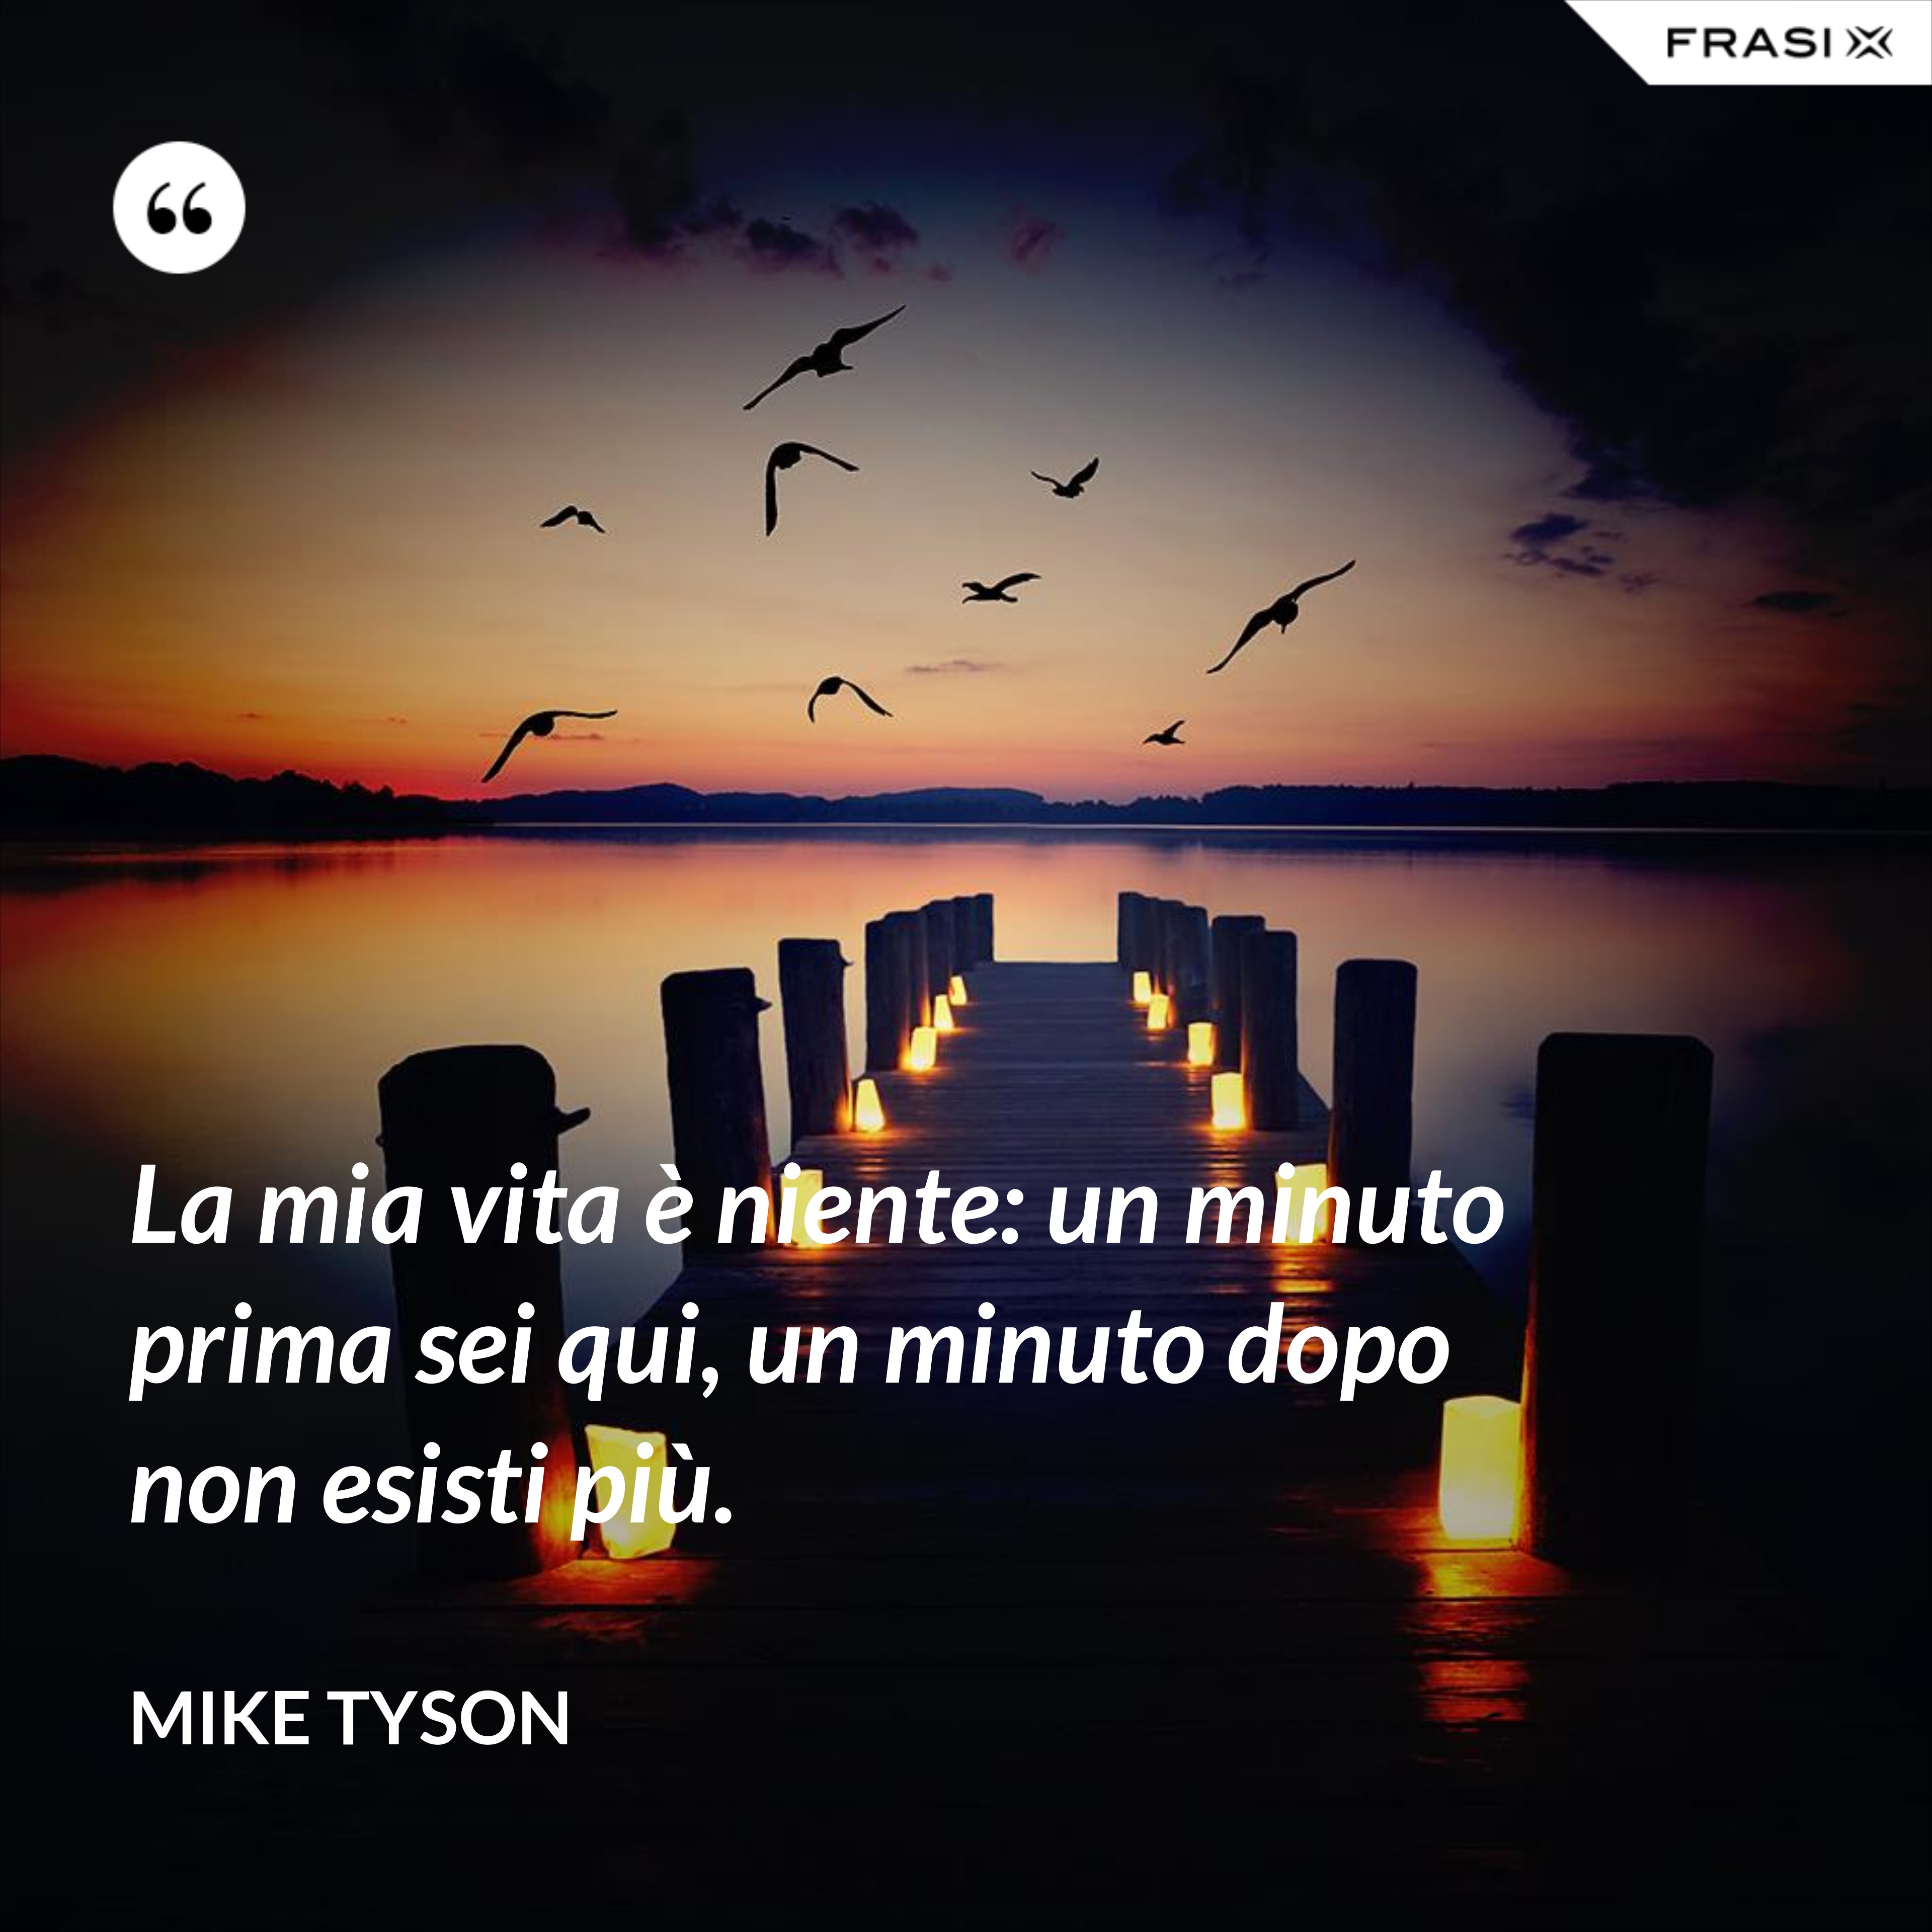 La mia vita è niente: un minuto prima sei qui, un minuto dopo non esisti più. - Mike Tyson